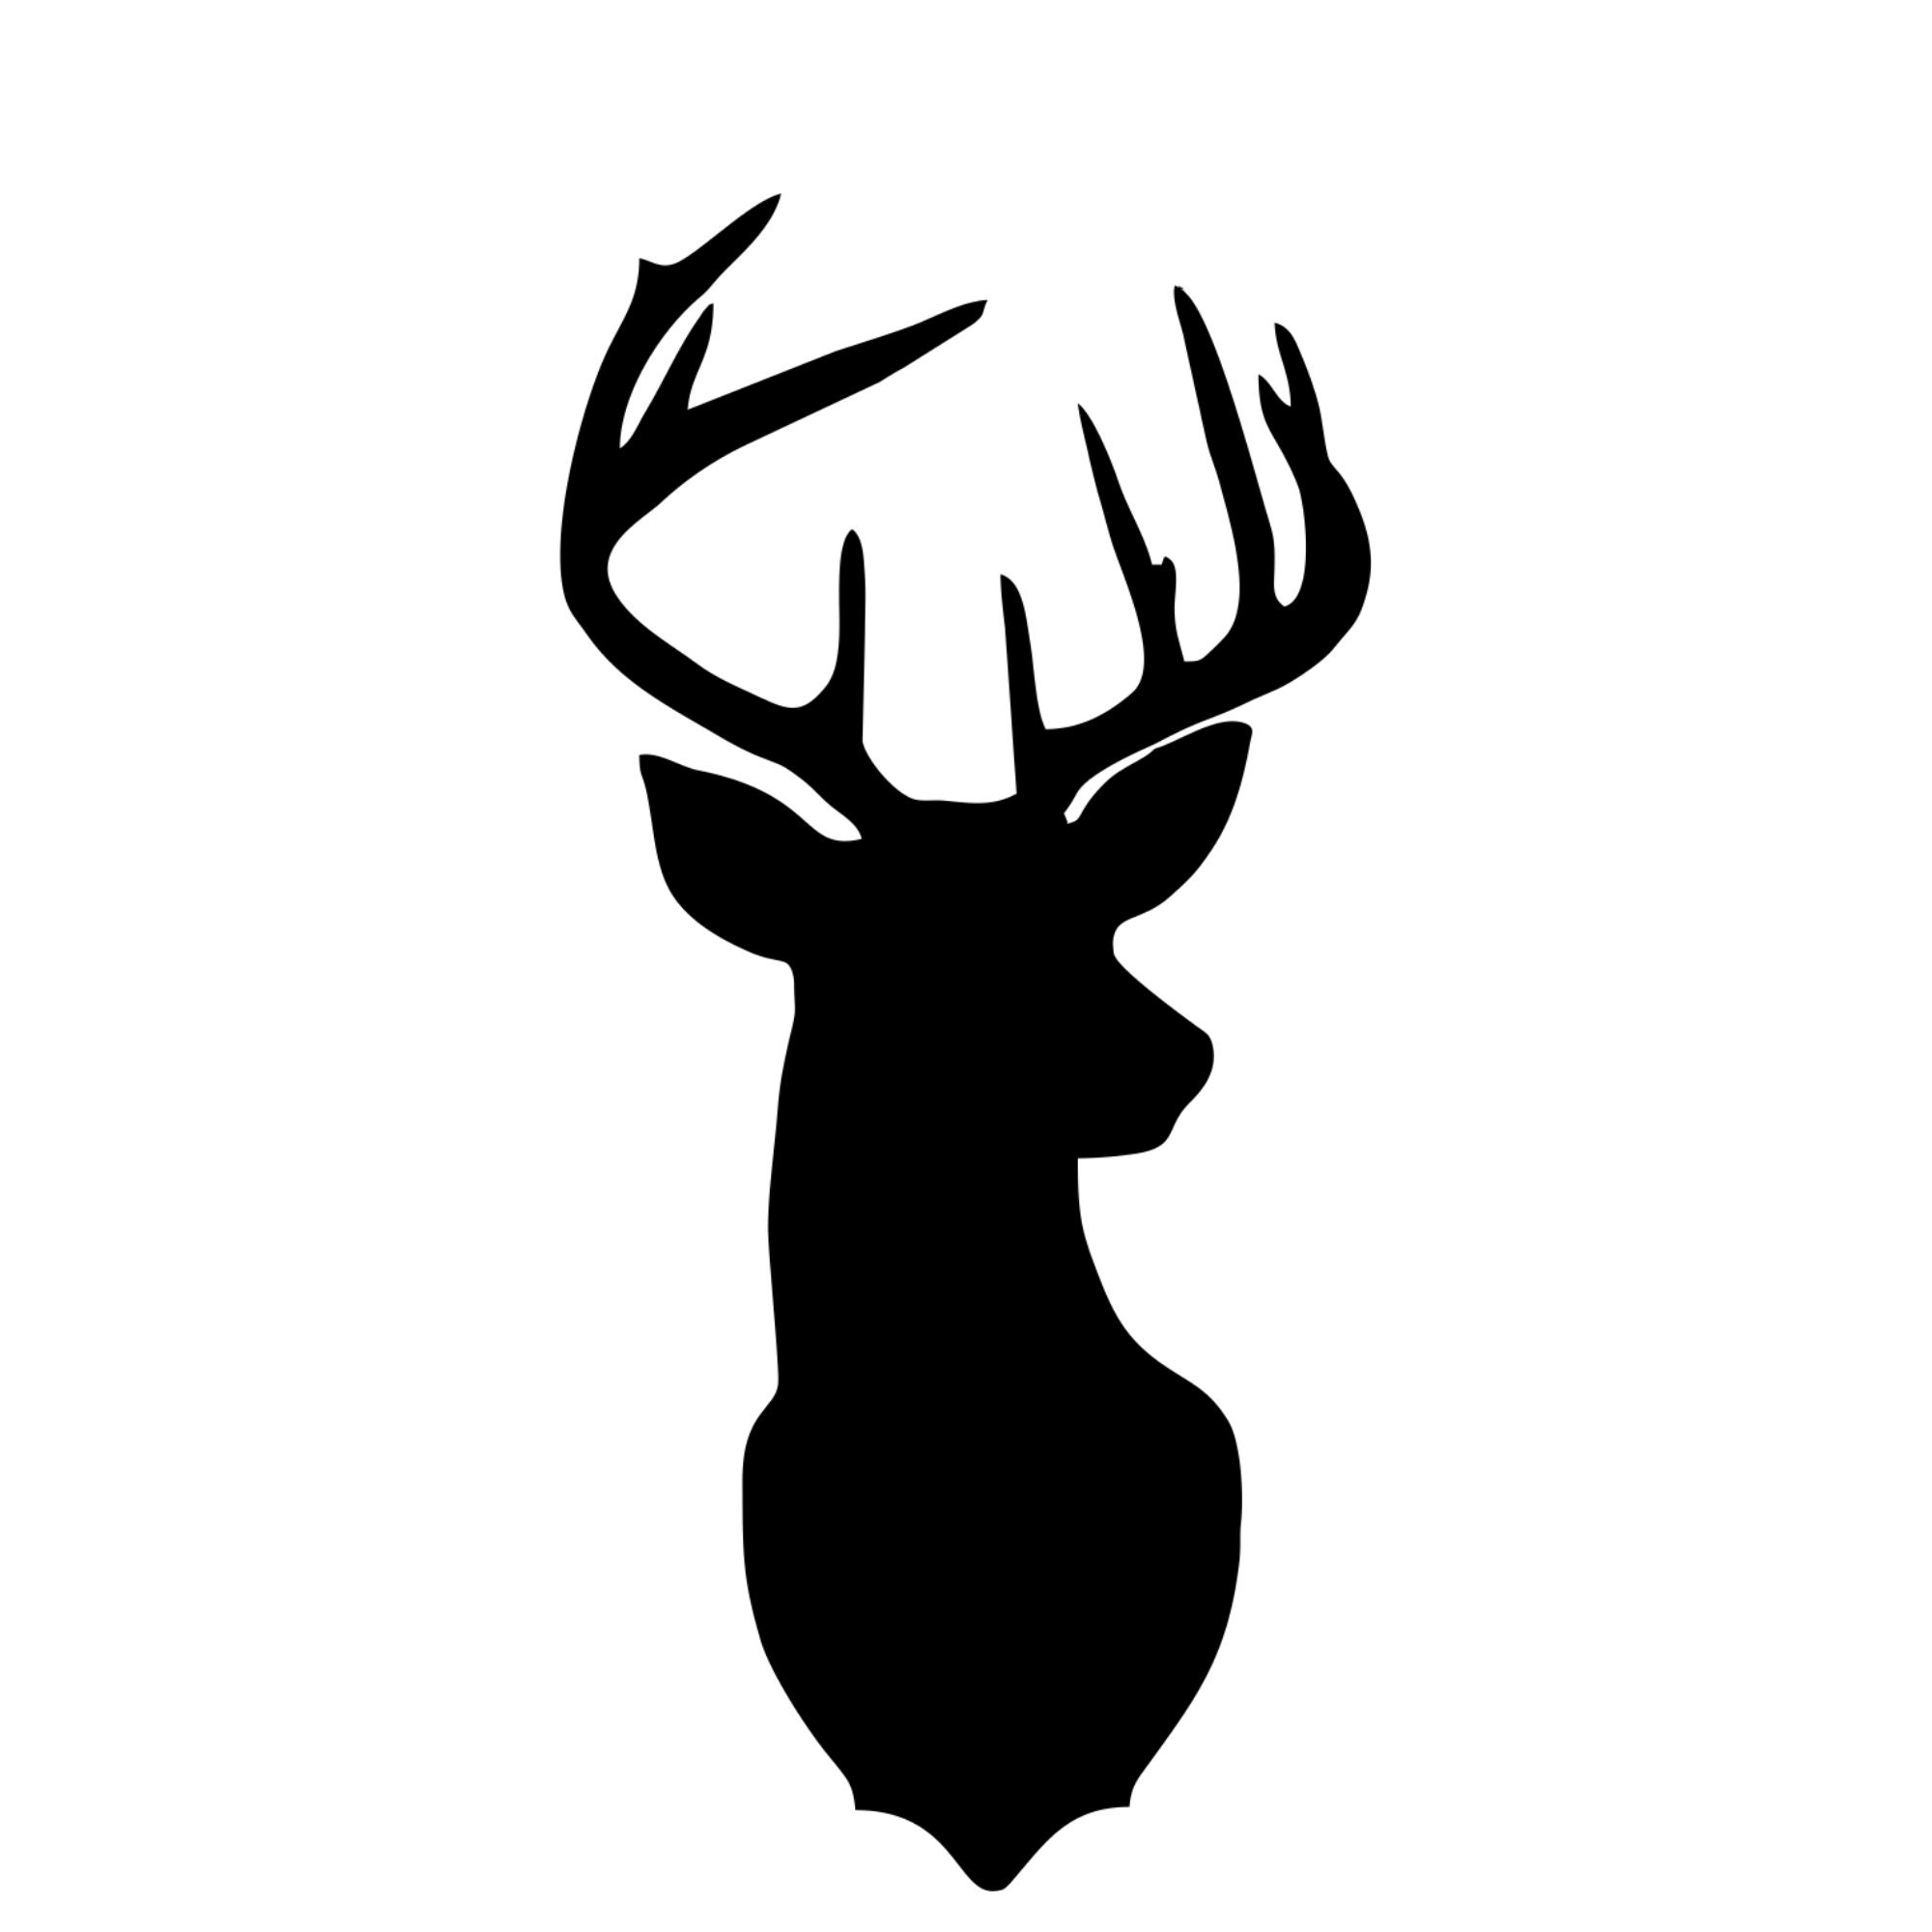 Download Deer Head Svg Deer Head Silhouette Cut File Deer Head Etsy